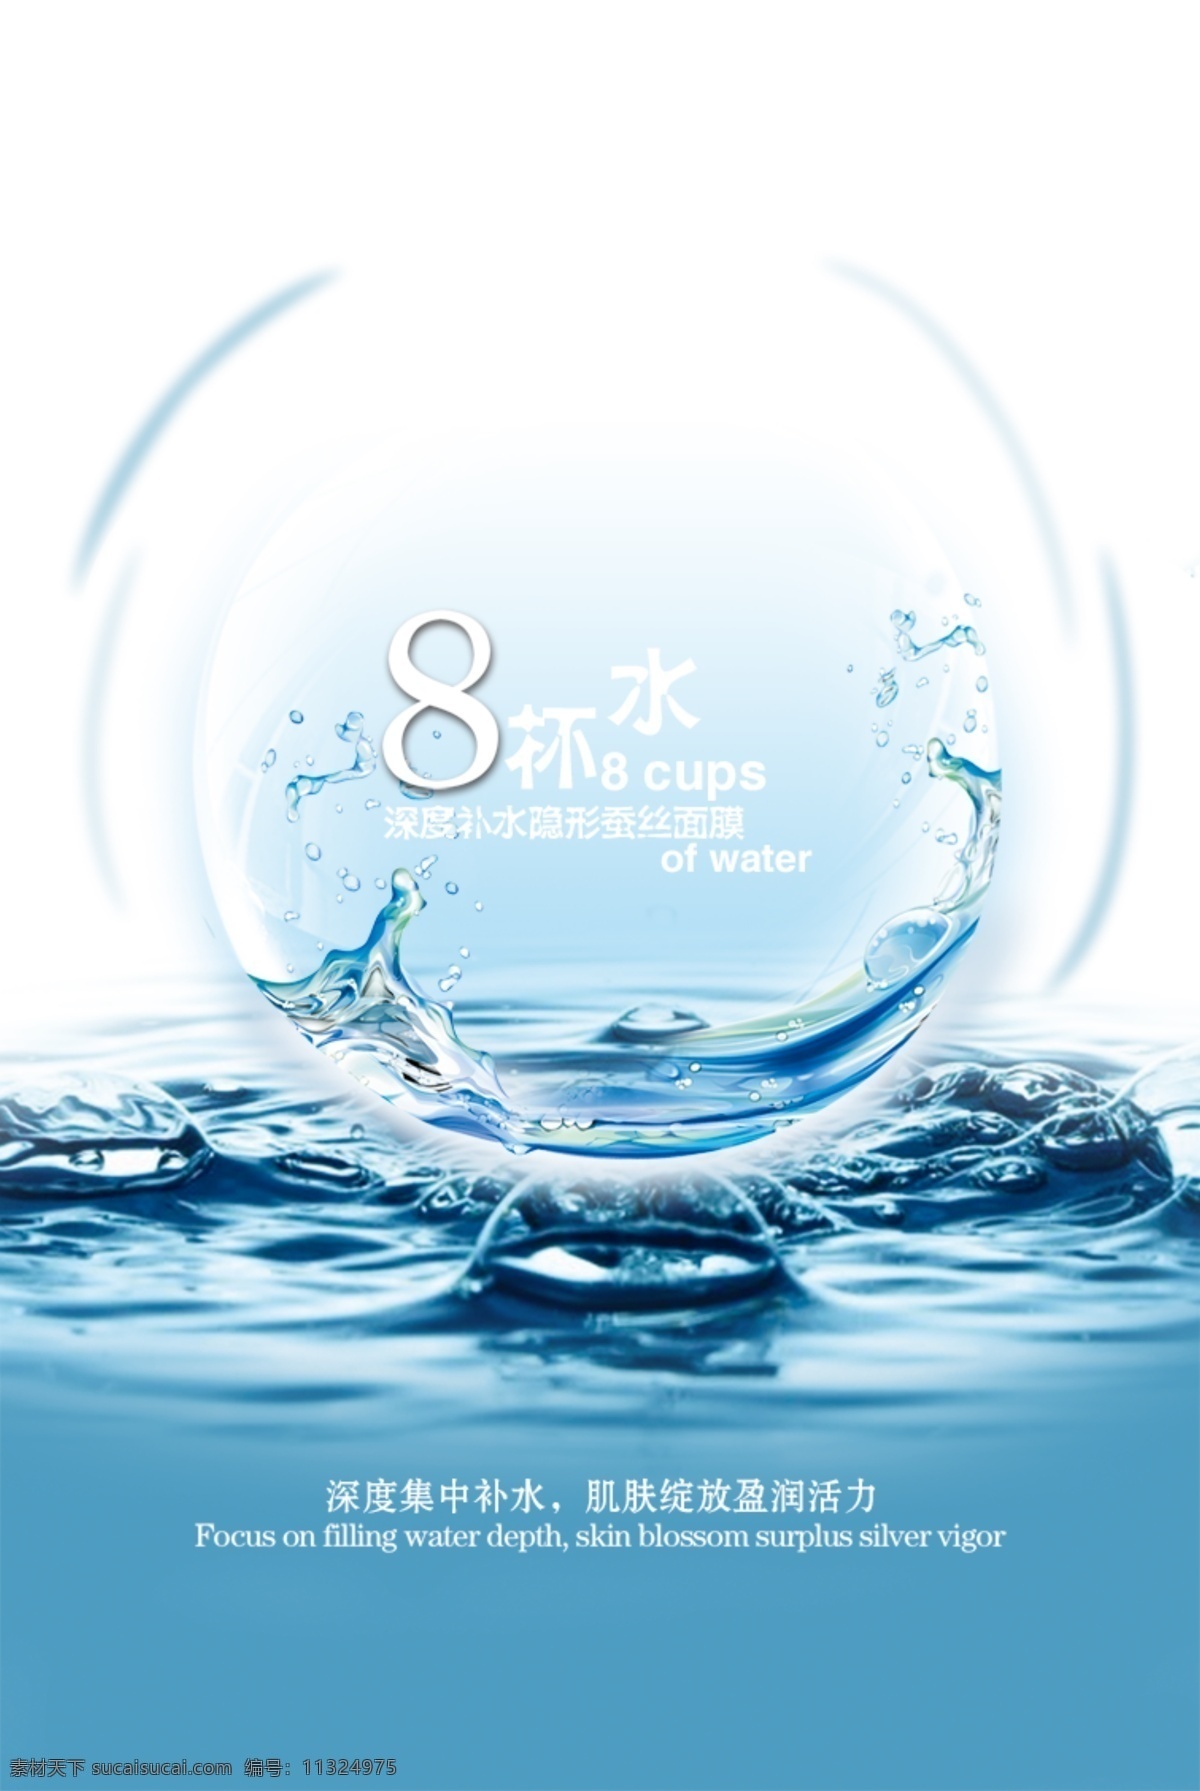 面膜广告 面膜广告背景 深度补水 保湿 补水 锁水 水球 水 水珠 液体 蓝色